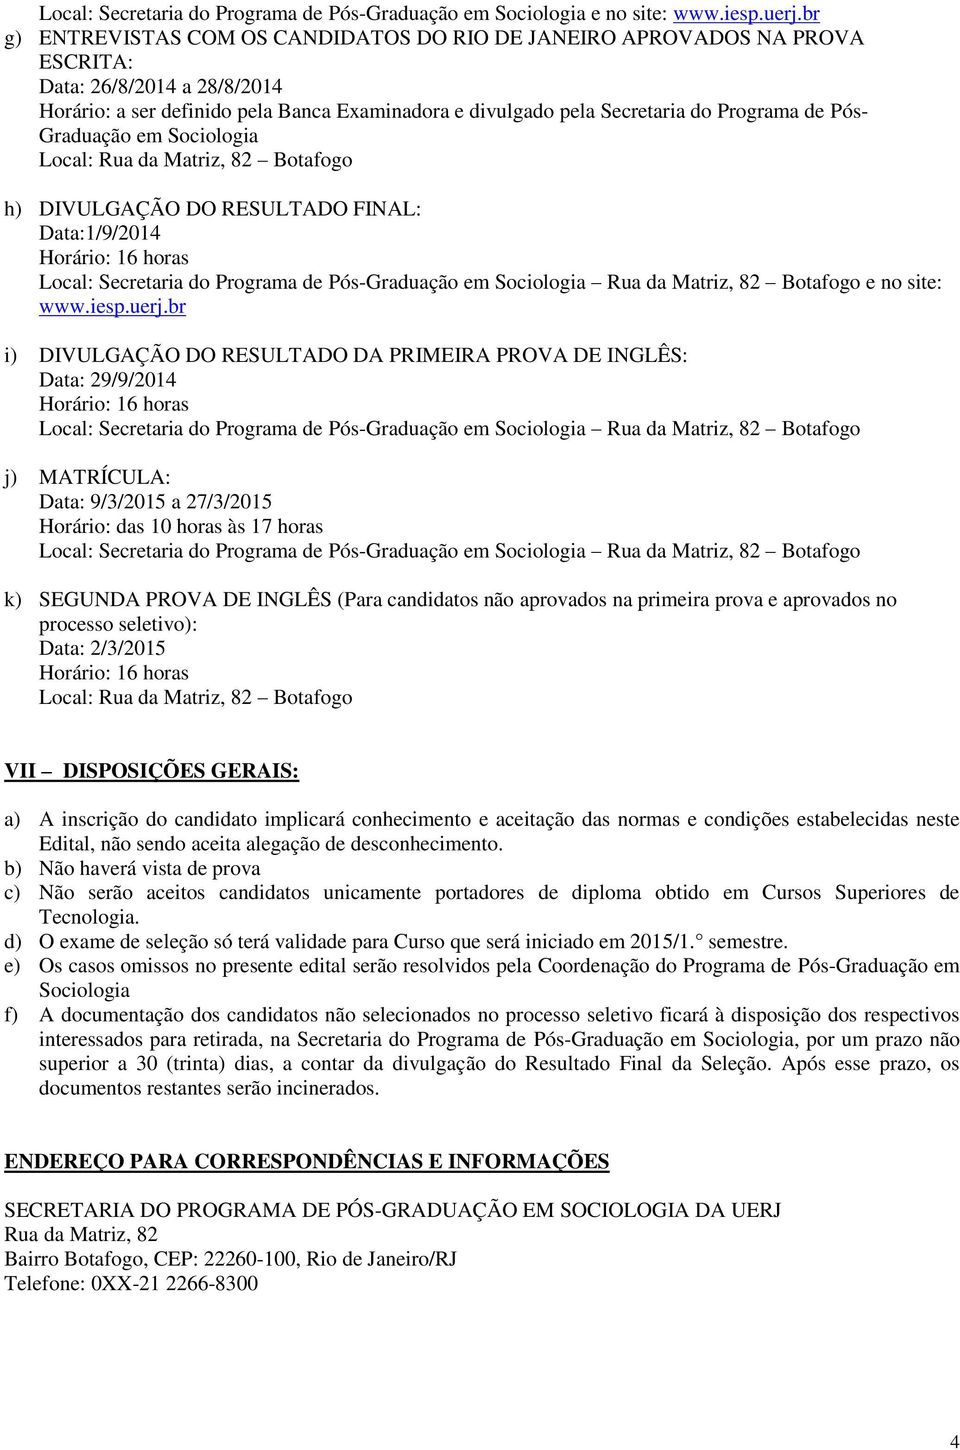 Pós- Graduação em Sociologia h) DIVULGAÇÃO DO RESULTADO FINAL: Data:1/9/2014 Local: Secretaria do Programa de Pós-Graduação em Sociologia Rua da Matriz, 82 Botafogo e no site: www.iesp.uerj.